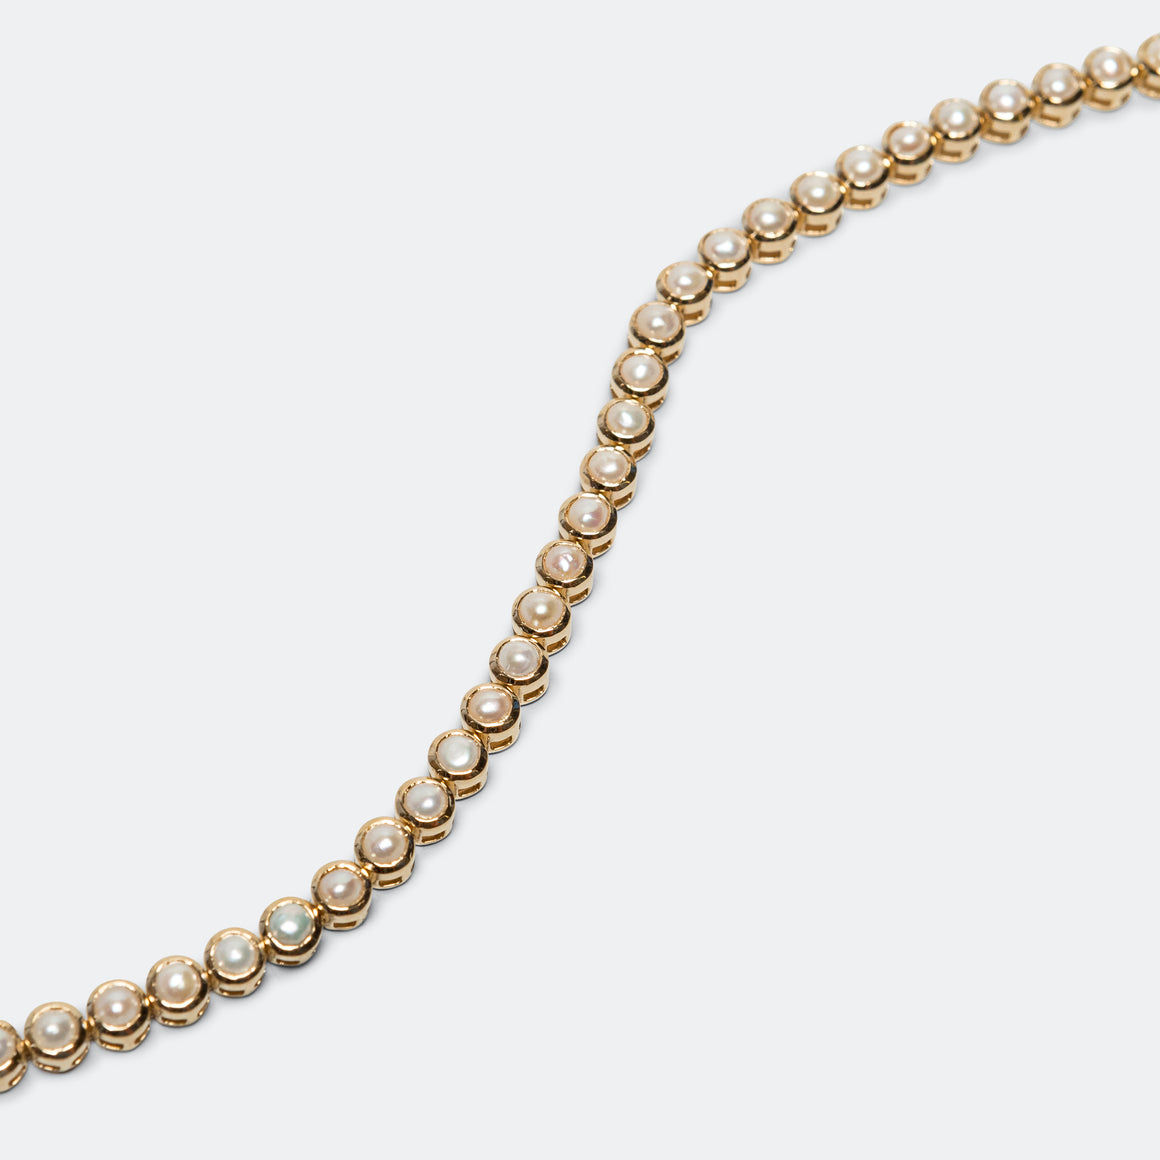 Heirloom Bracelet - 18K Gold/White Pearls